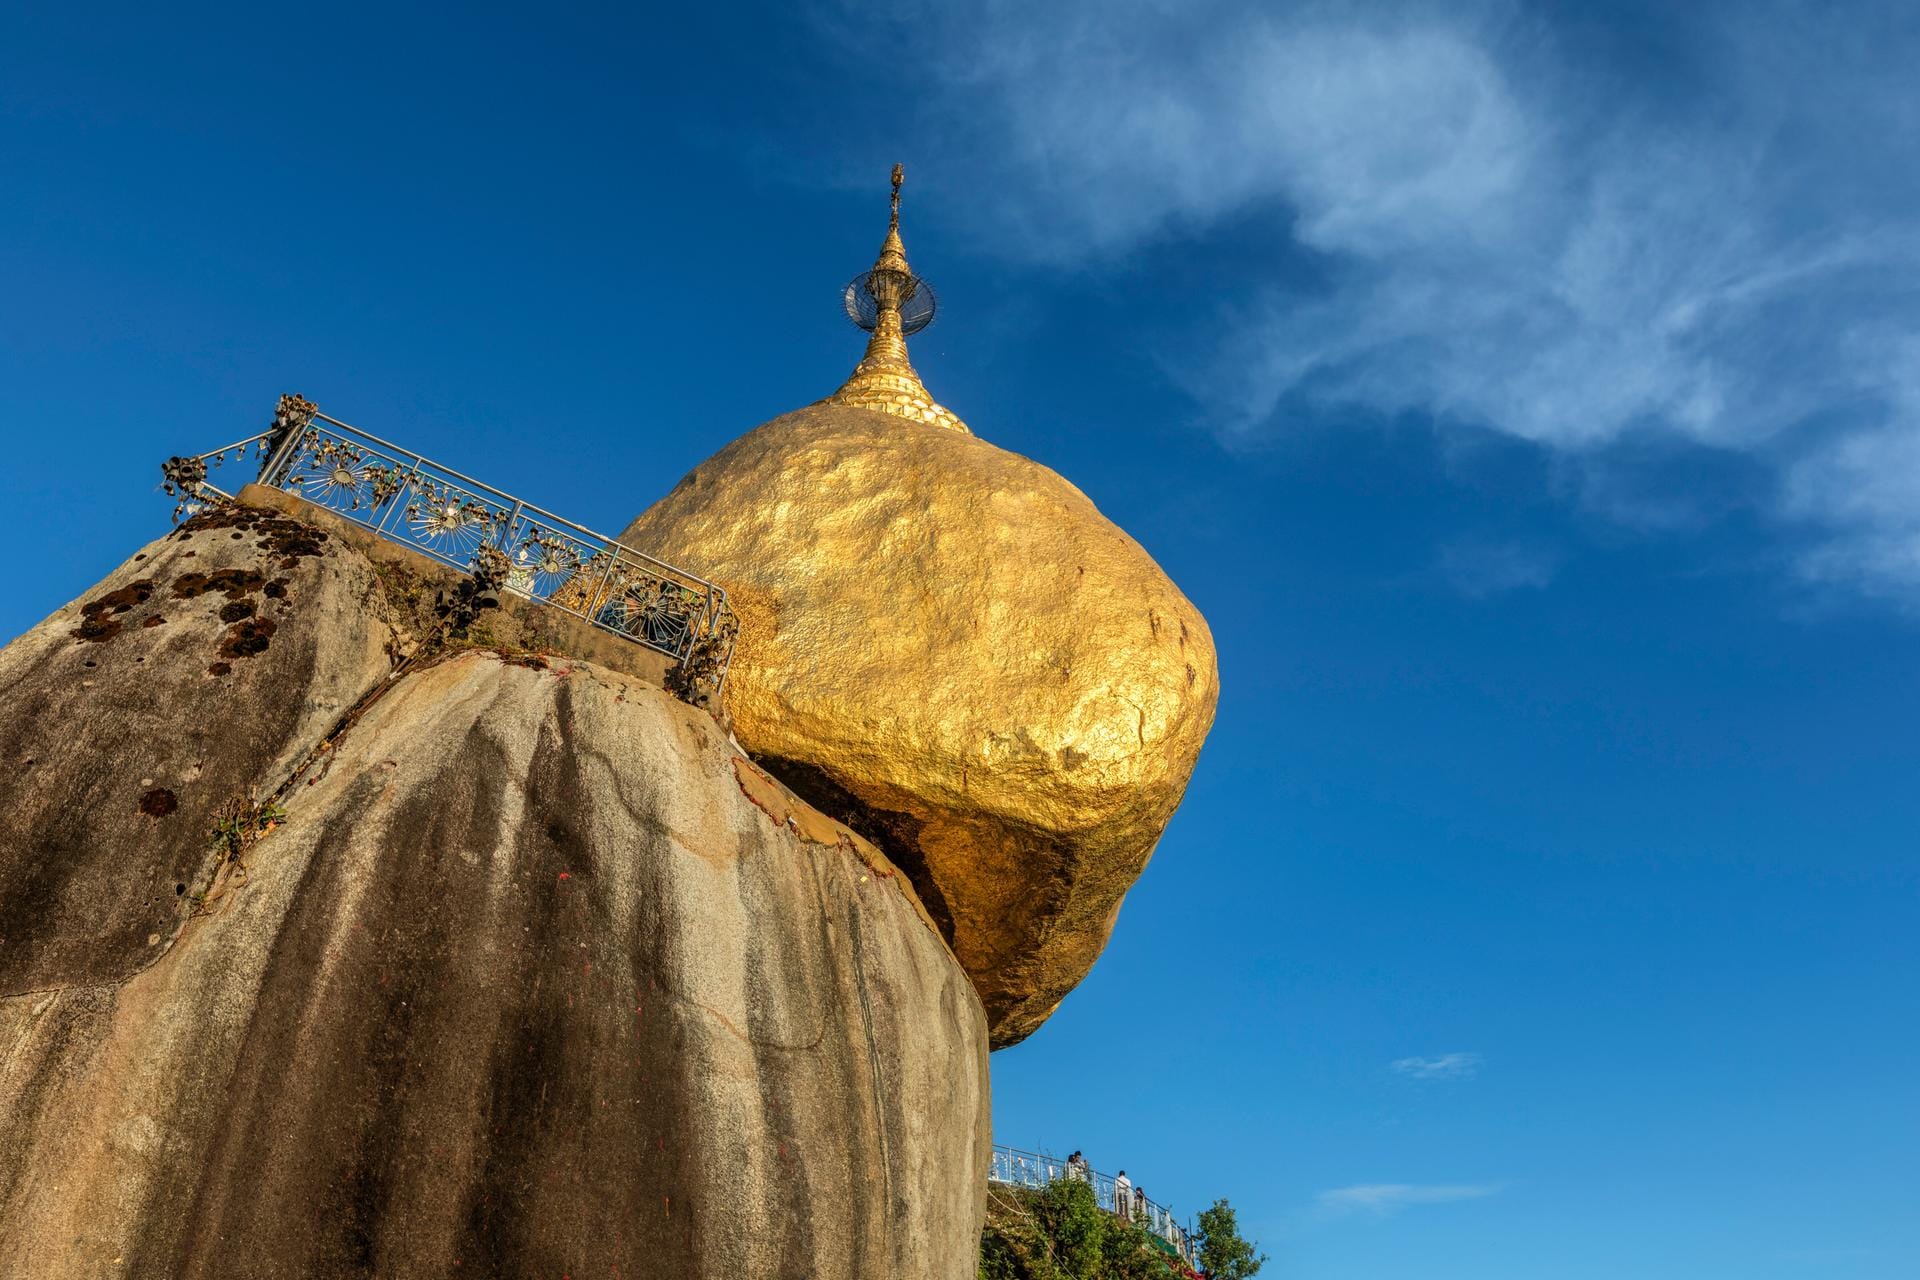 Einmalig präsentiert sich auch der berühmte "Golden Rock" von Myanmar, der sich ganz gefährlich über den Rand lehnt und dennoch nicht abstürzt. Der Legende nach verhindert dies ein Haar Buddhas. Ein wahrhaft heiliger Felsen, der zahlreiche Pilger anzieht, auch wenn der Aufstieg sehr mühsam ist. Circa vier Kilometer müssen zu Fuß zurückgelegt werden. Als Belohnung für die Mühe gibt's zumindest eine beeindruckende Aussicht.